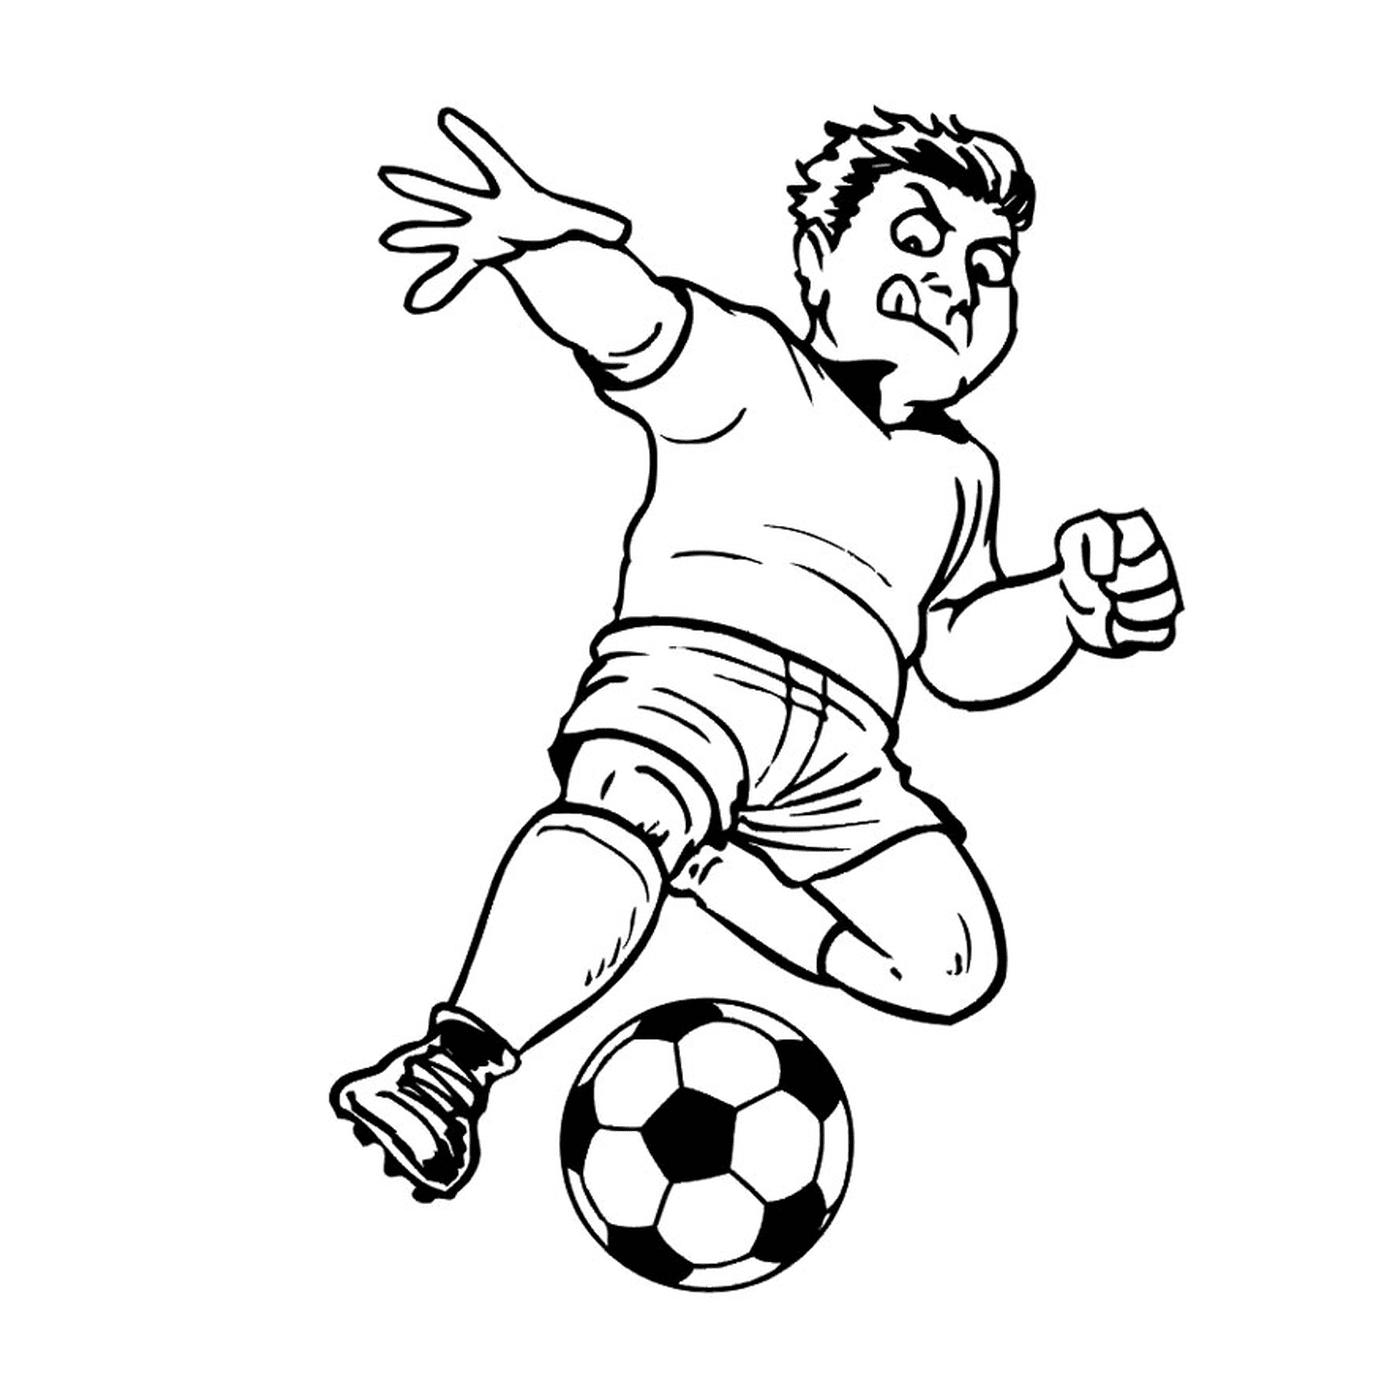  Um homem joga futebol 